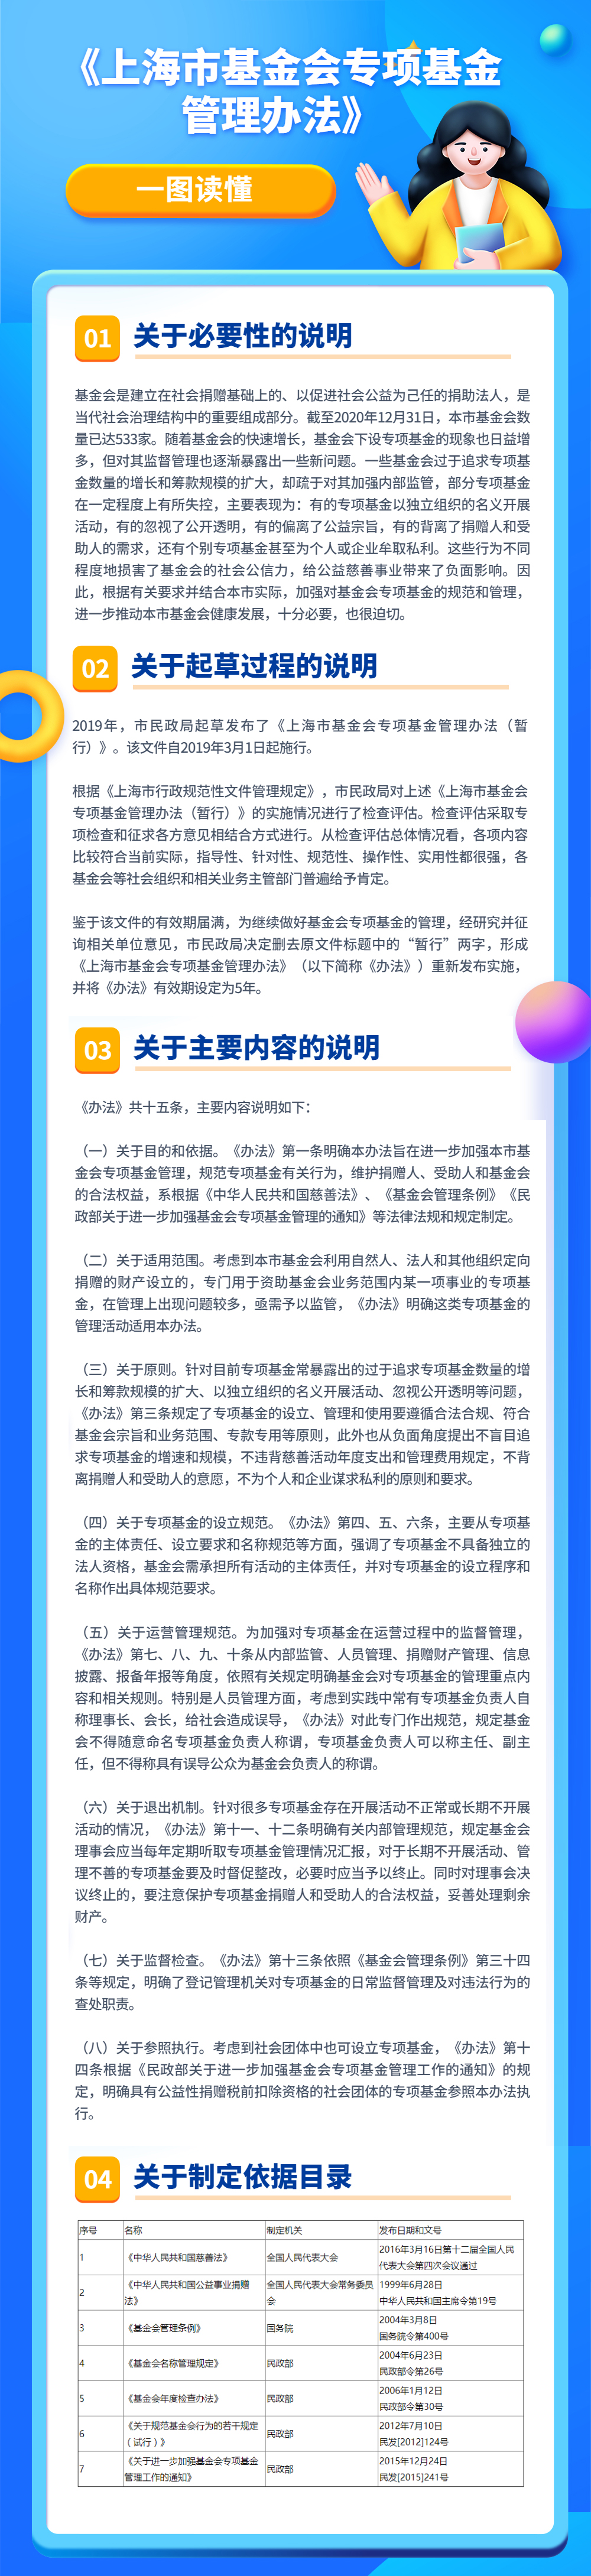 一图读懂《上海市基金会专项基金管理办法》.jpg